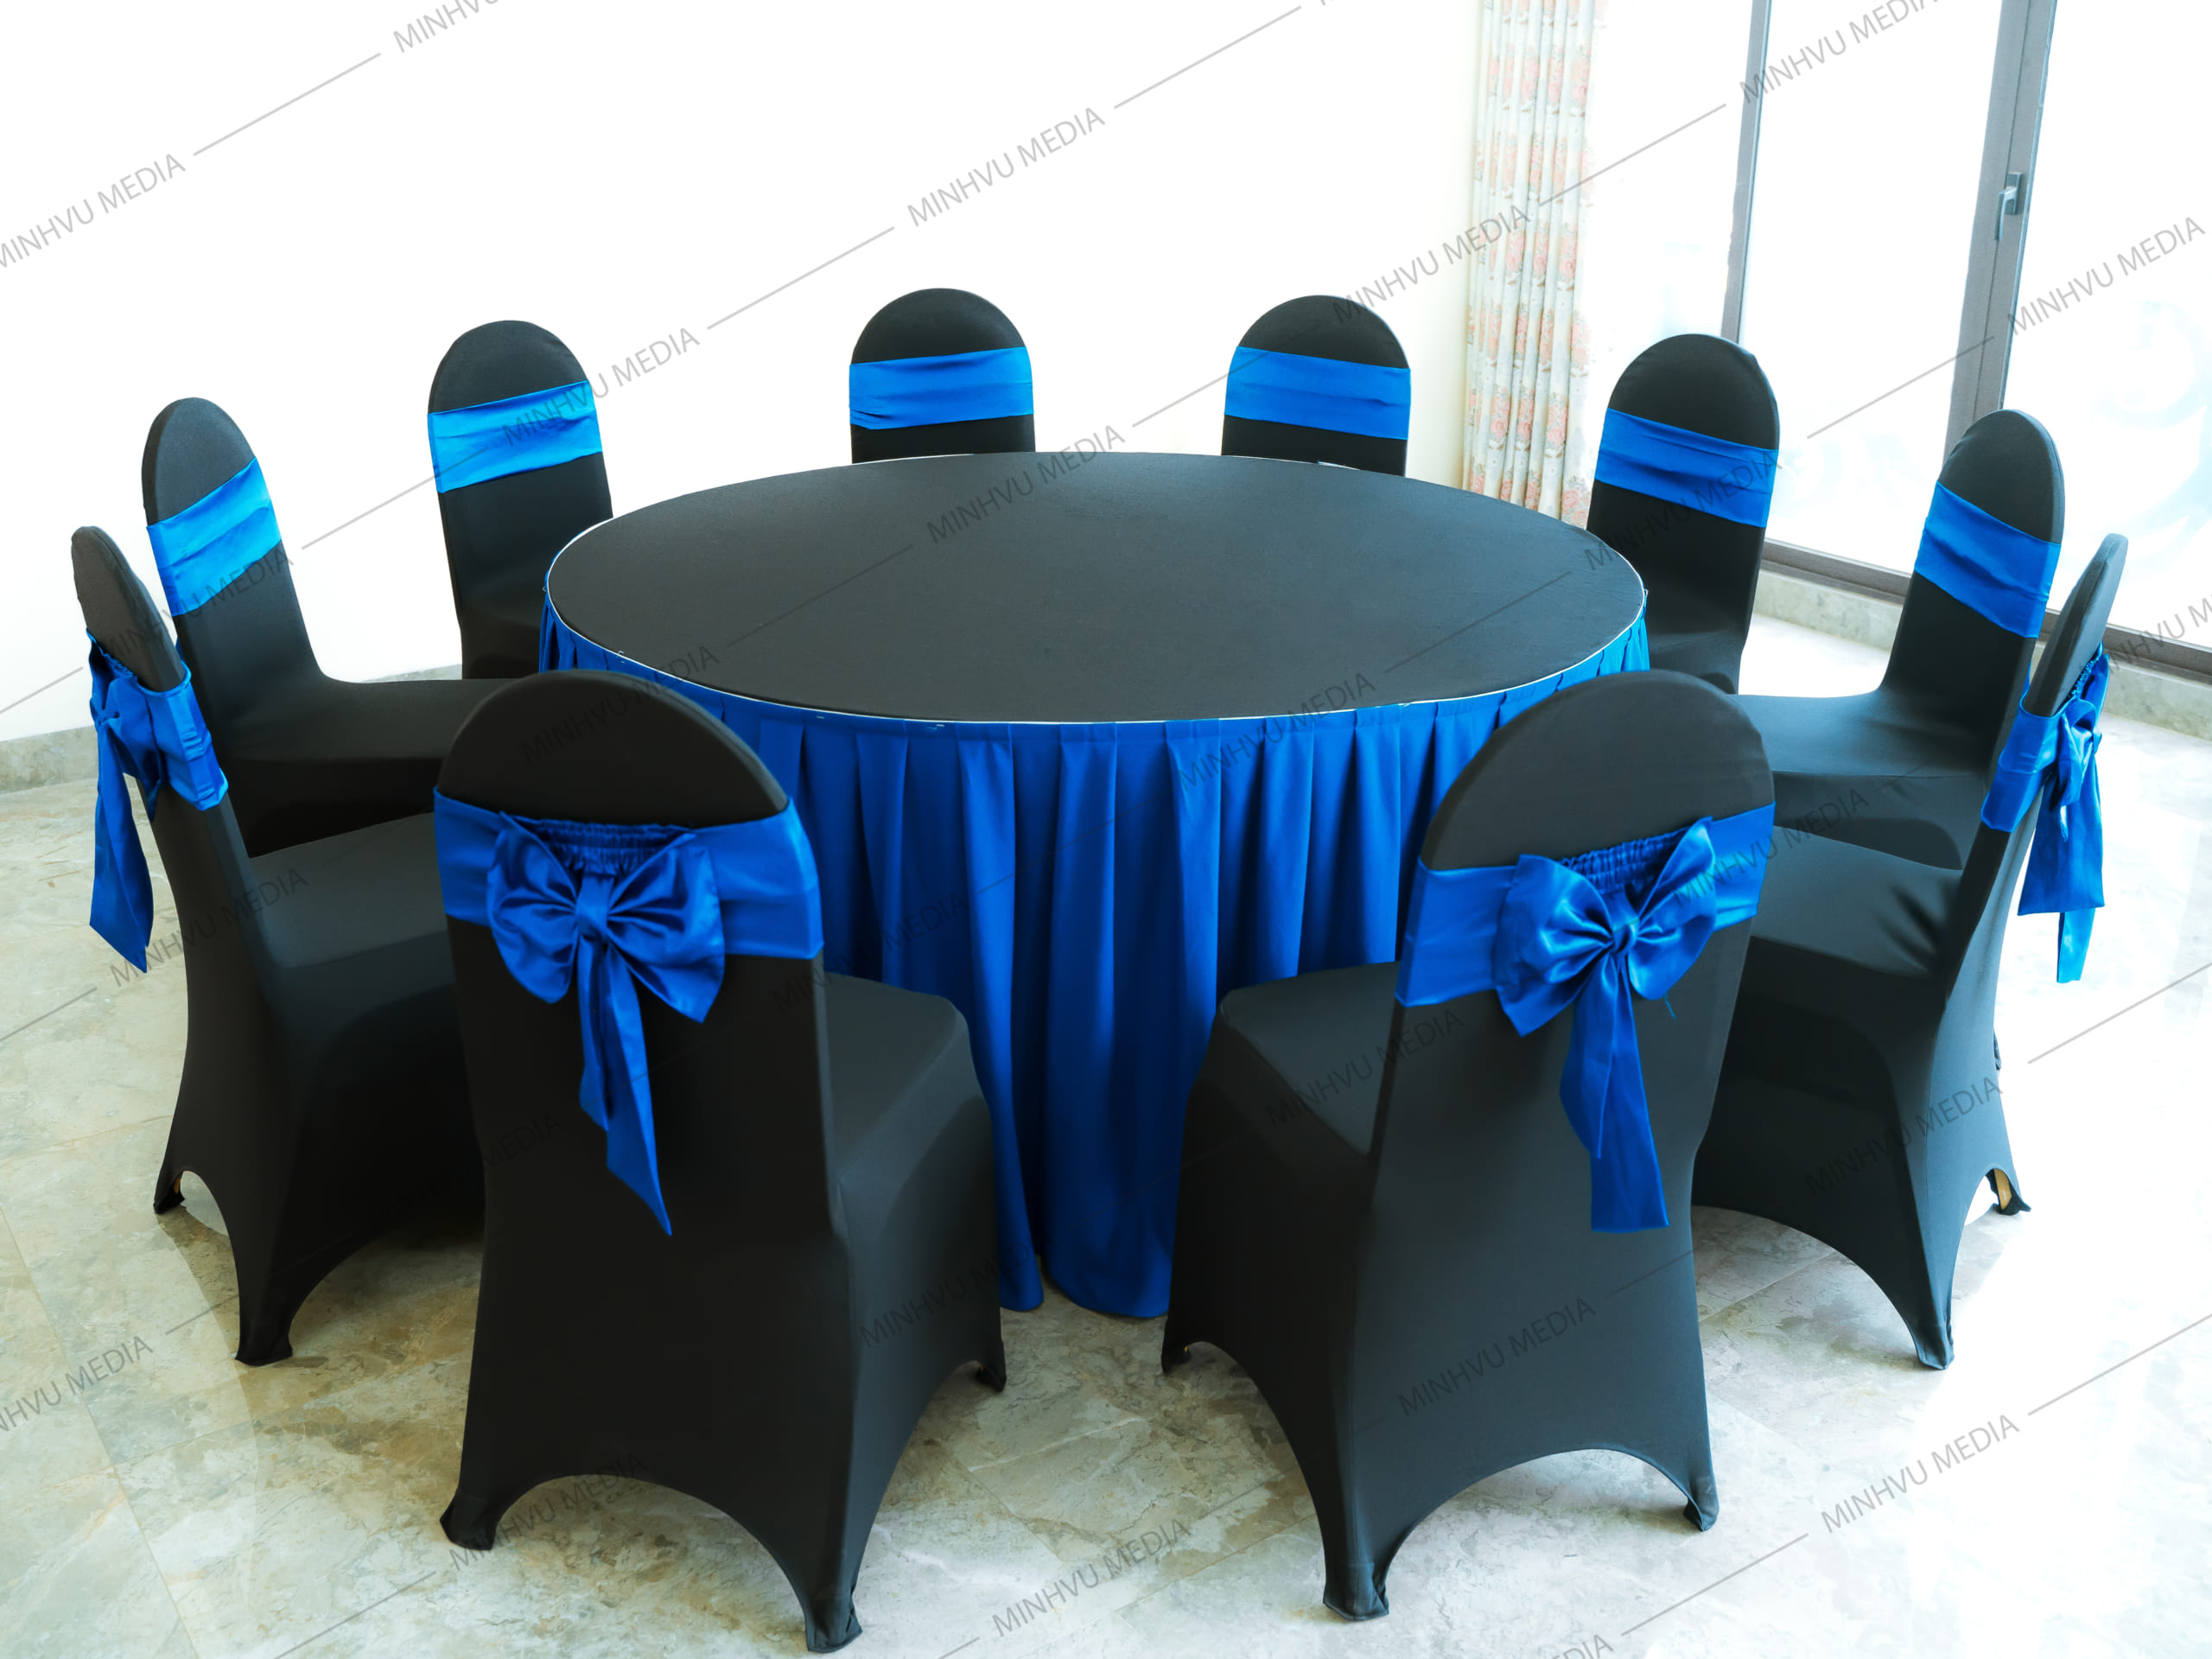 Bộ bàn ghế banquet tròn đen, nơ xanh dương